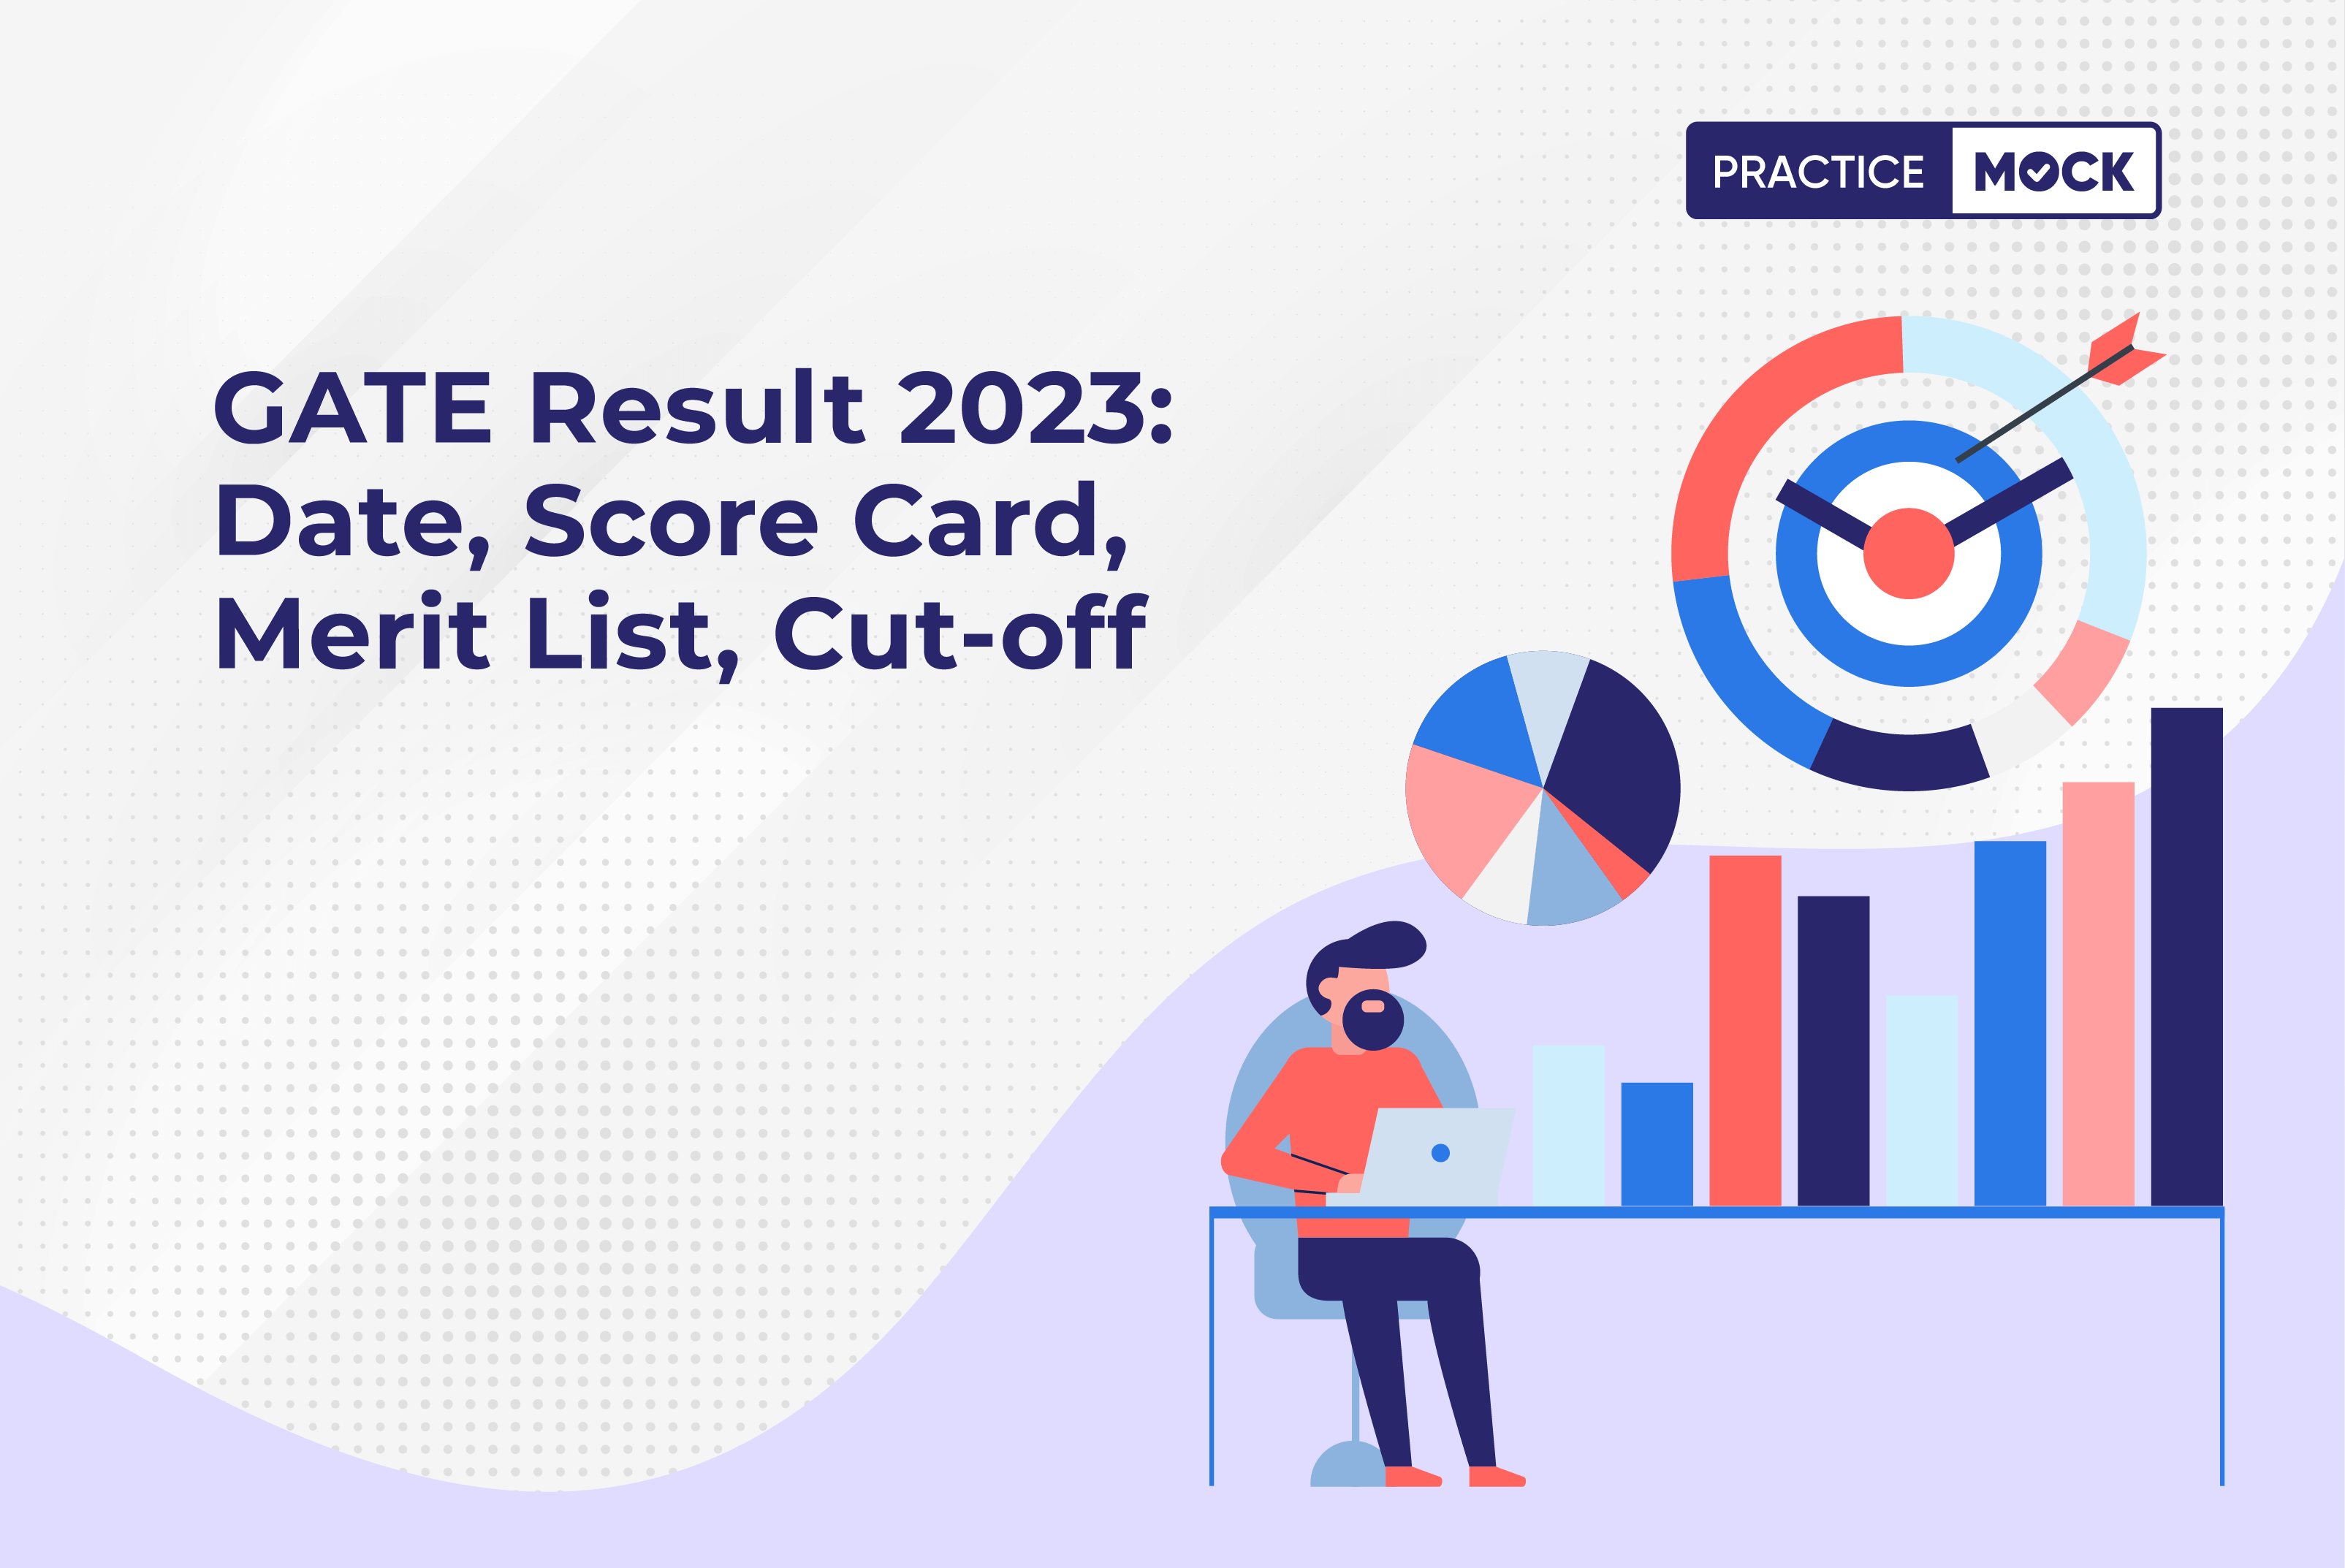 GATE Result 2023 Date, Score Card, Merit List, Cut-off